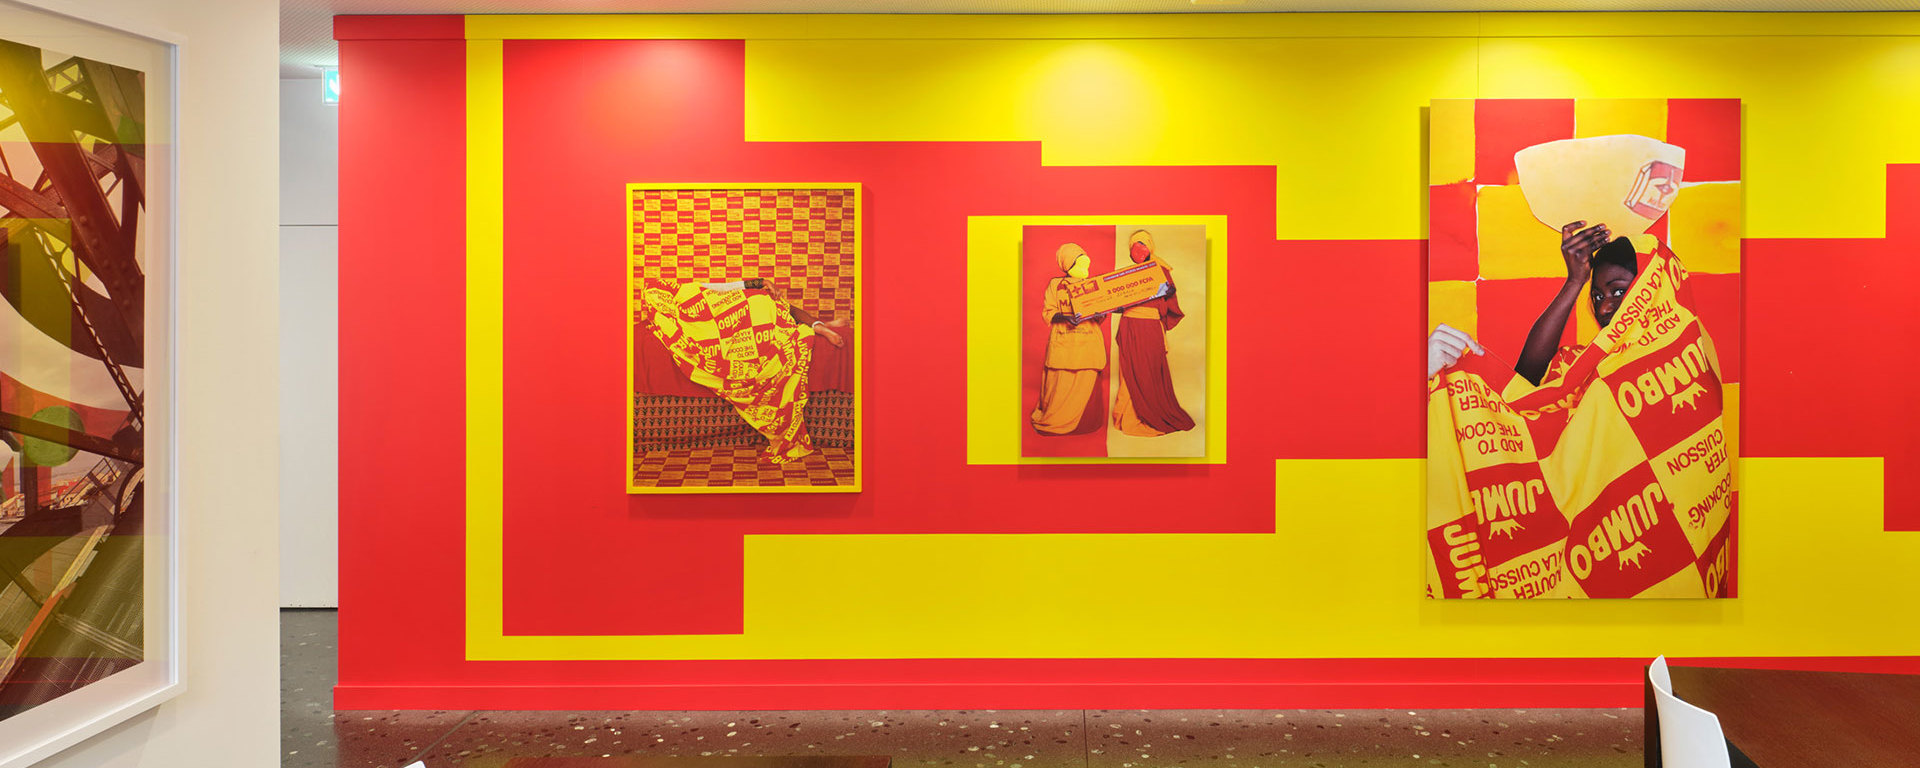 Art Vontobel - Fotowand in Rot und Gelb mit einer Fotoserie im Personalrestaurant